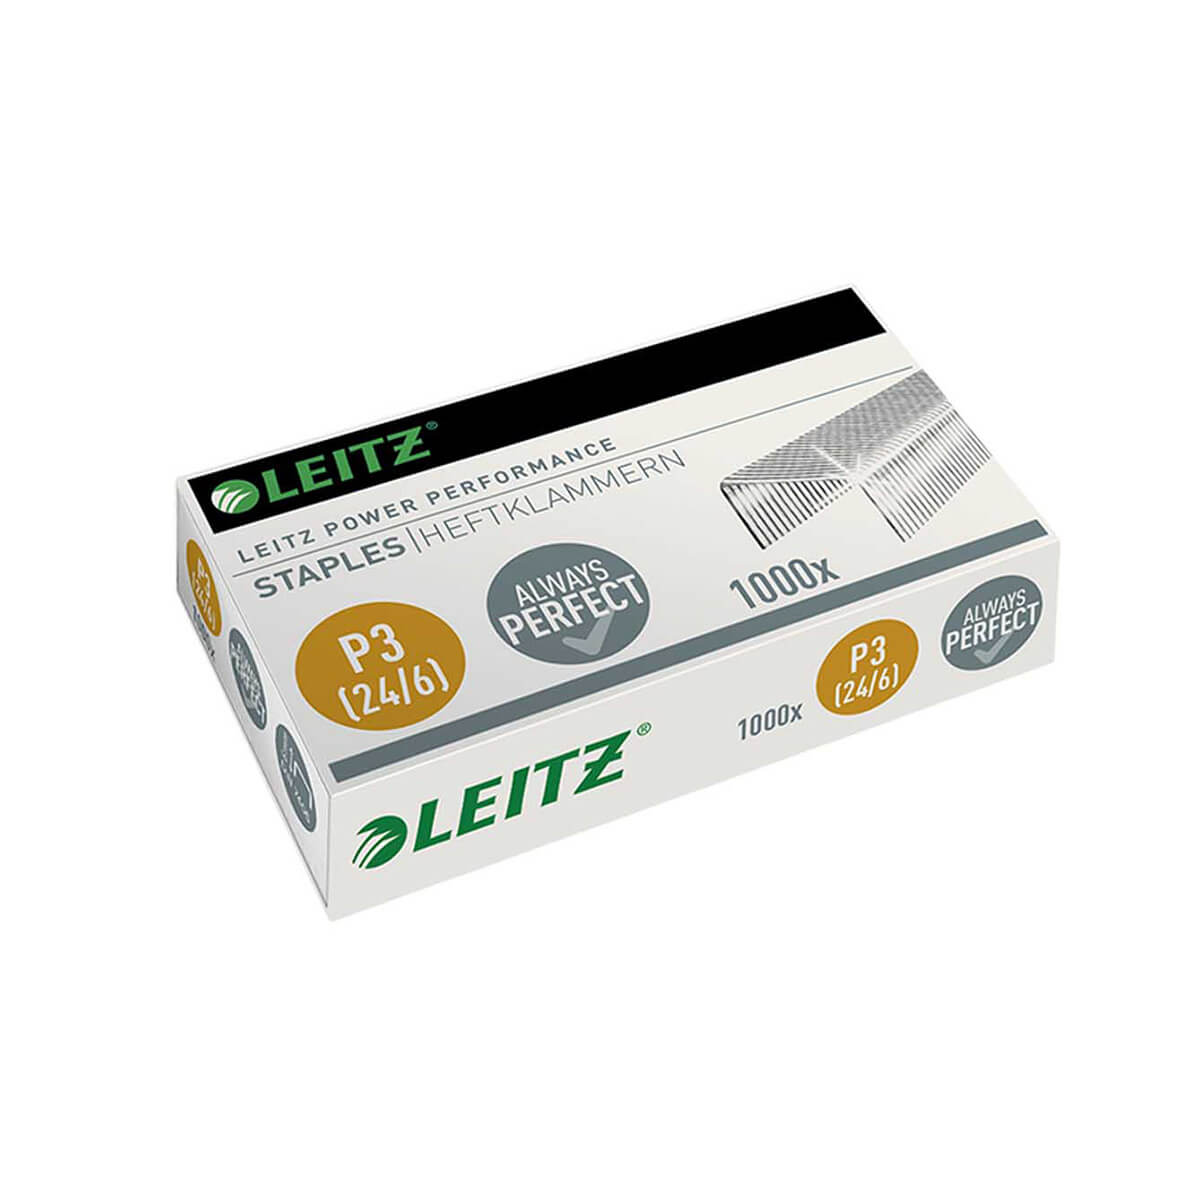 Leitz Staple p3 24|6 30 sheet 1000 staples